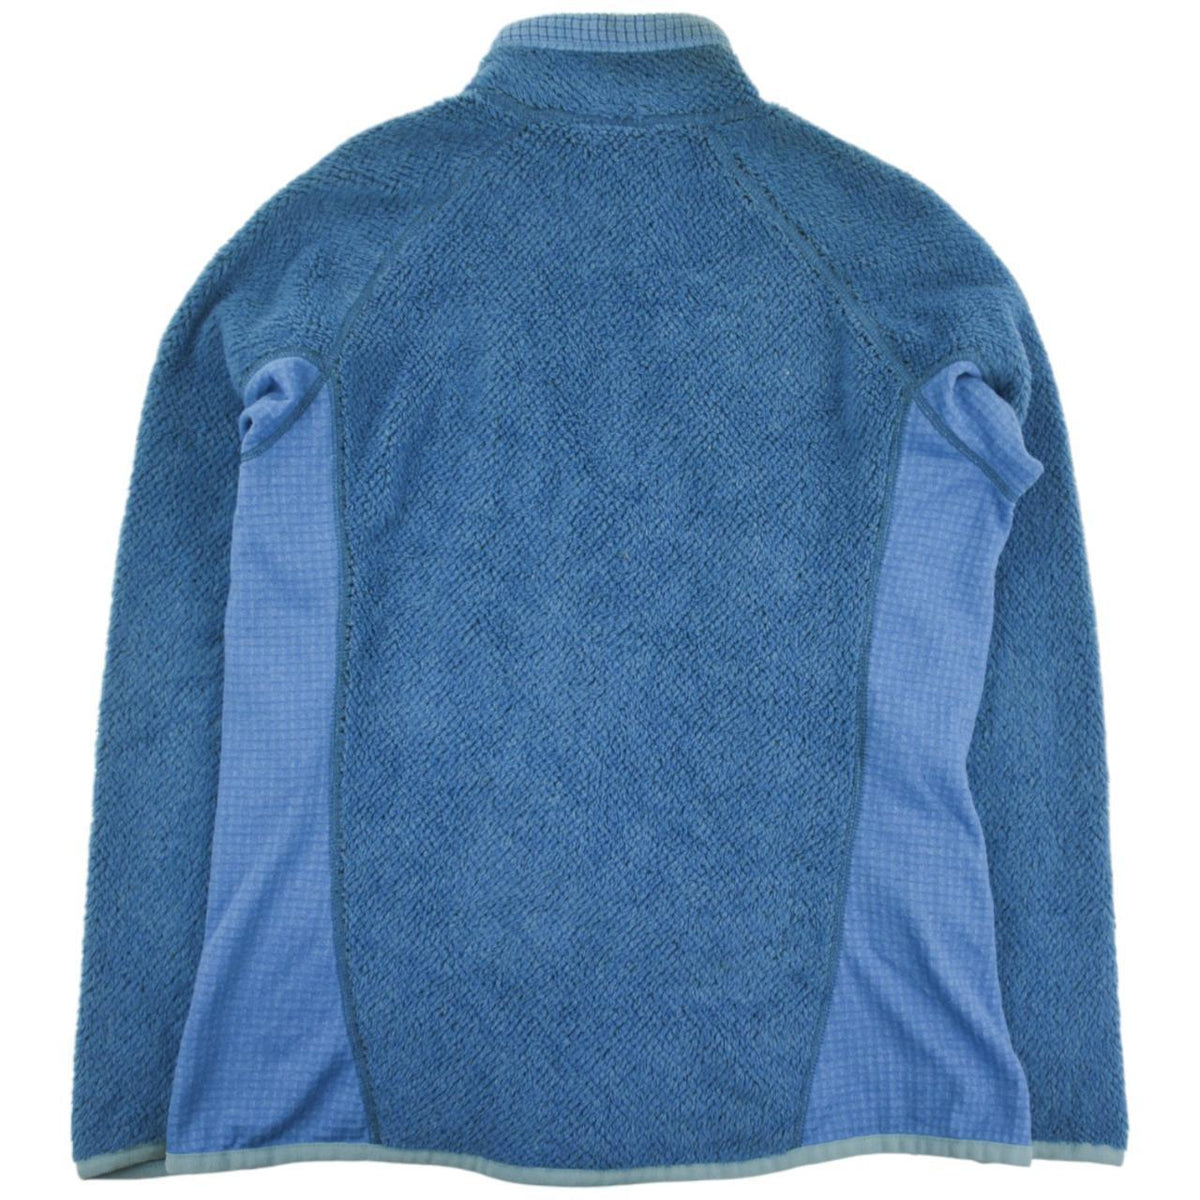 Vintage Patagonia Zip Up Fleece Size S